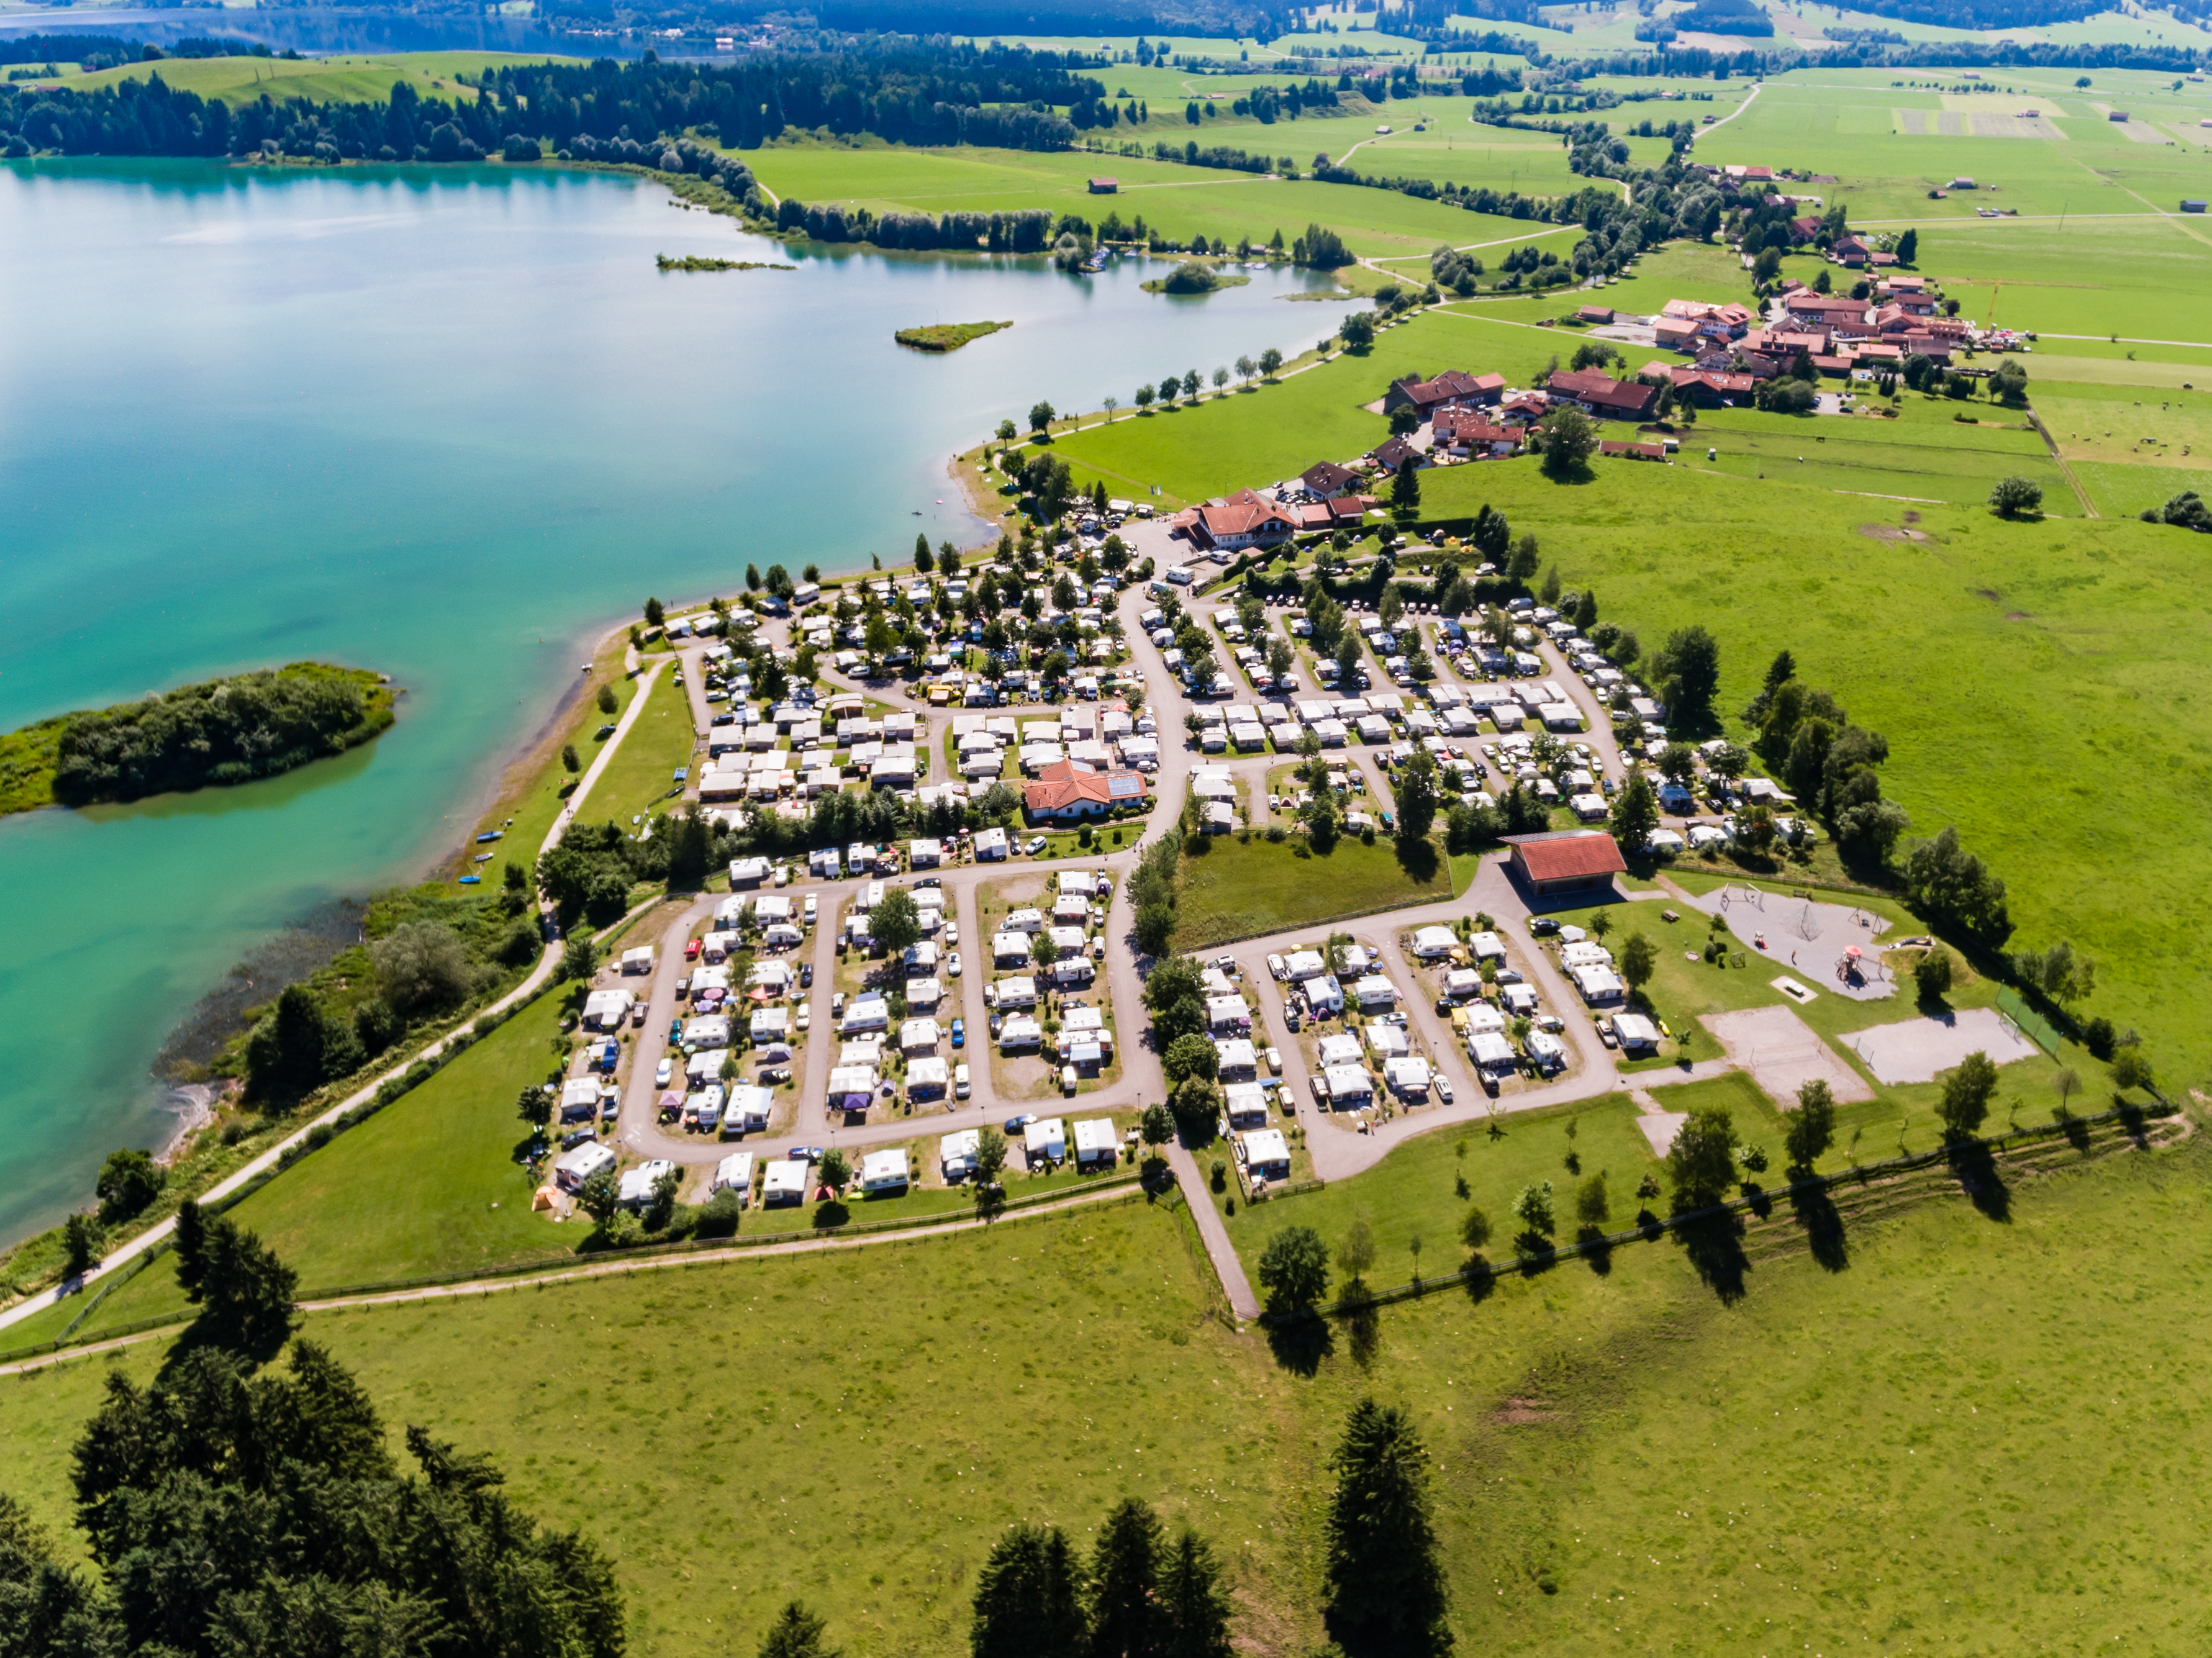 Download - Camping Brunnen - Ihr 365 Tage Campingplatz im Allgäu